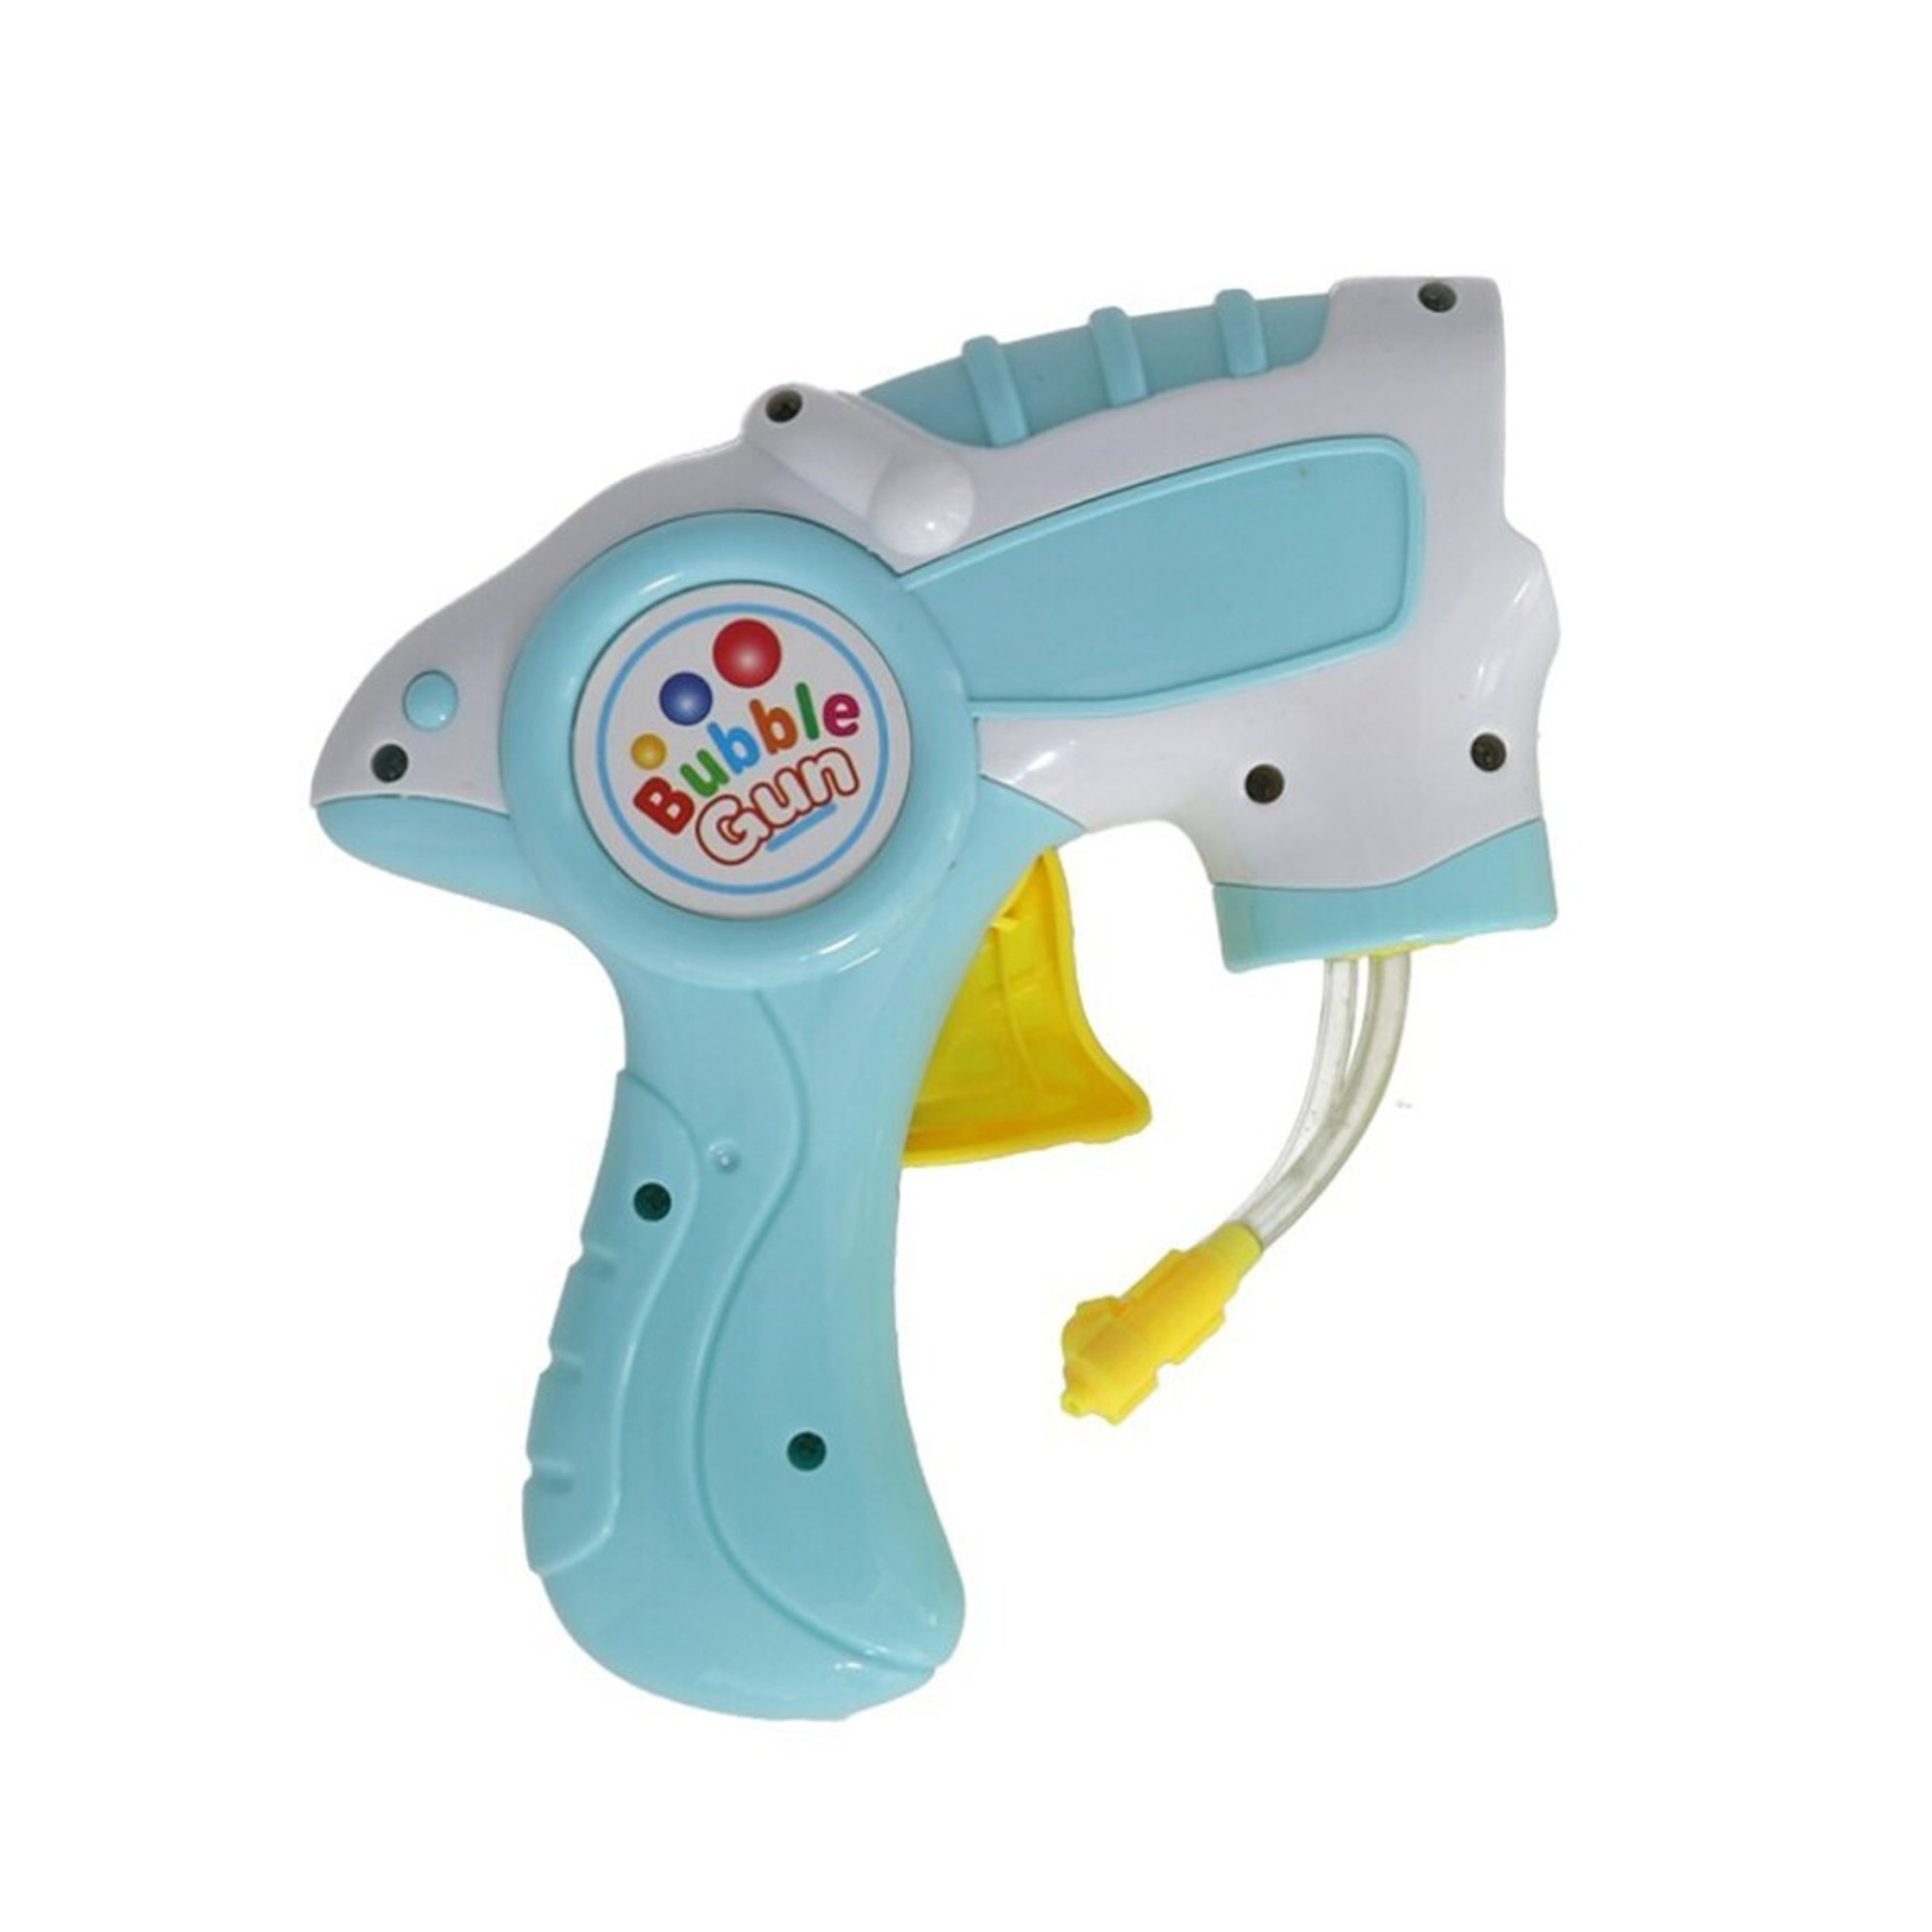 Bellenblaas speelgoed pistool met vullingen lichtblauw 15 cm plastic bellen blazen